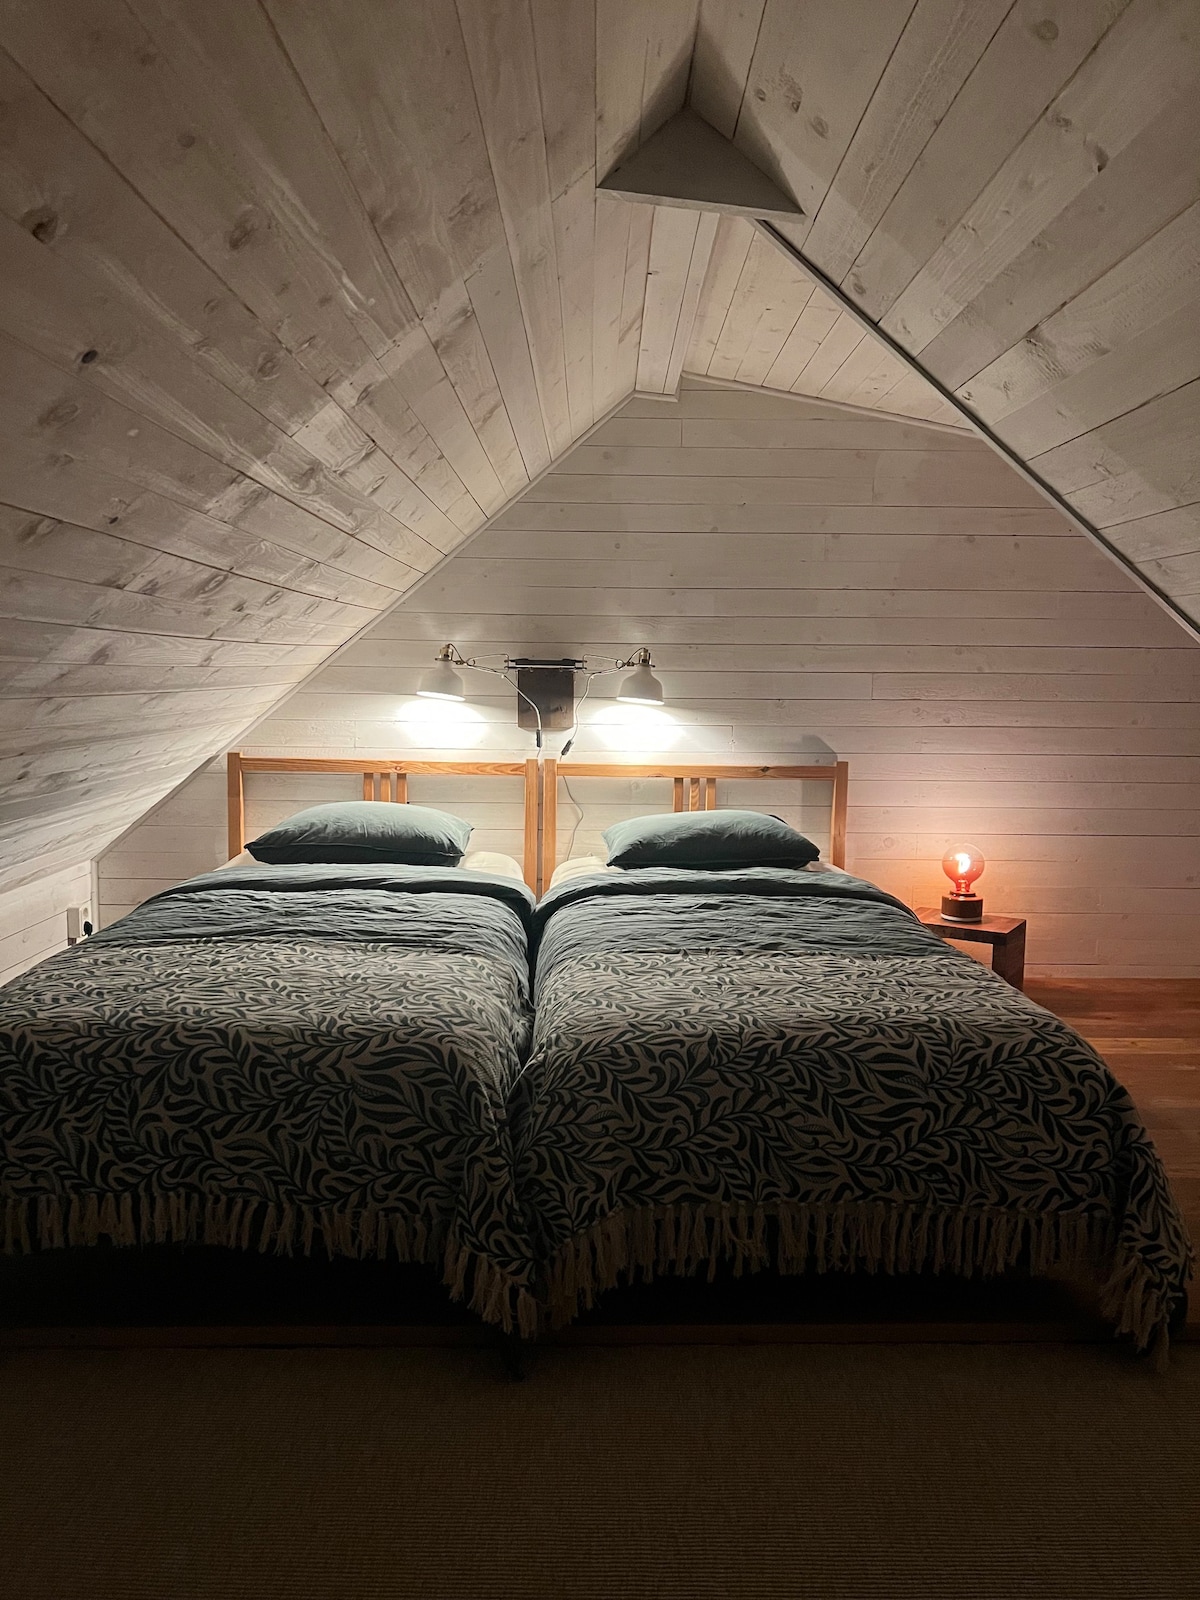 Alstad Vuokrattavat loma-asunnot ja talot - Skånen lääni, Ruotsi | Airbnb